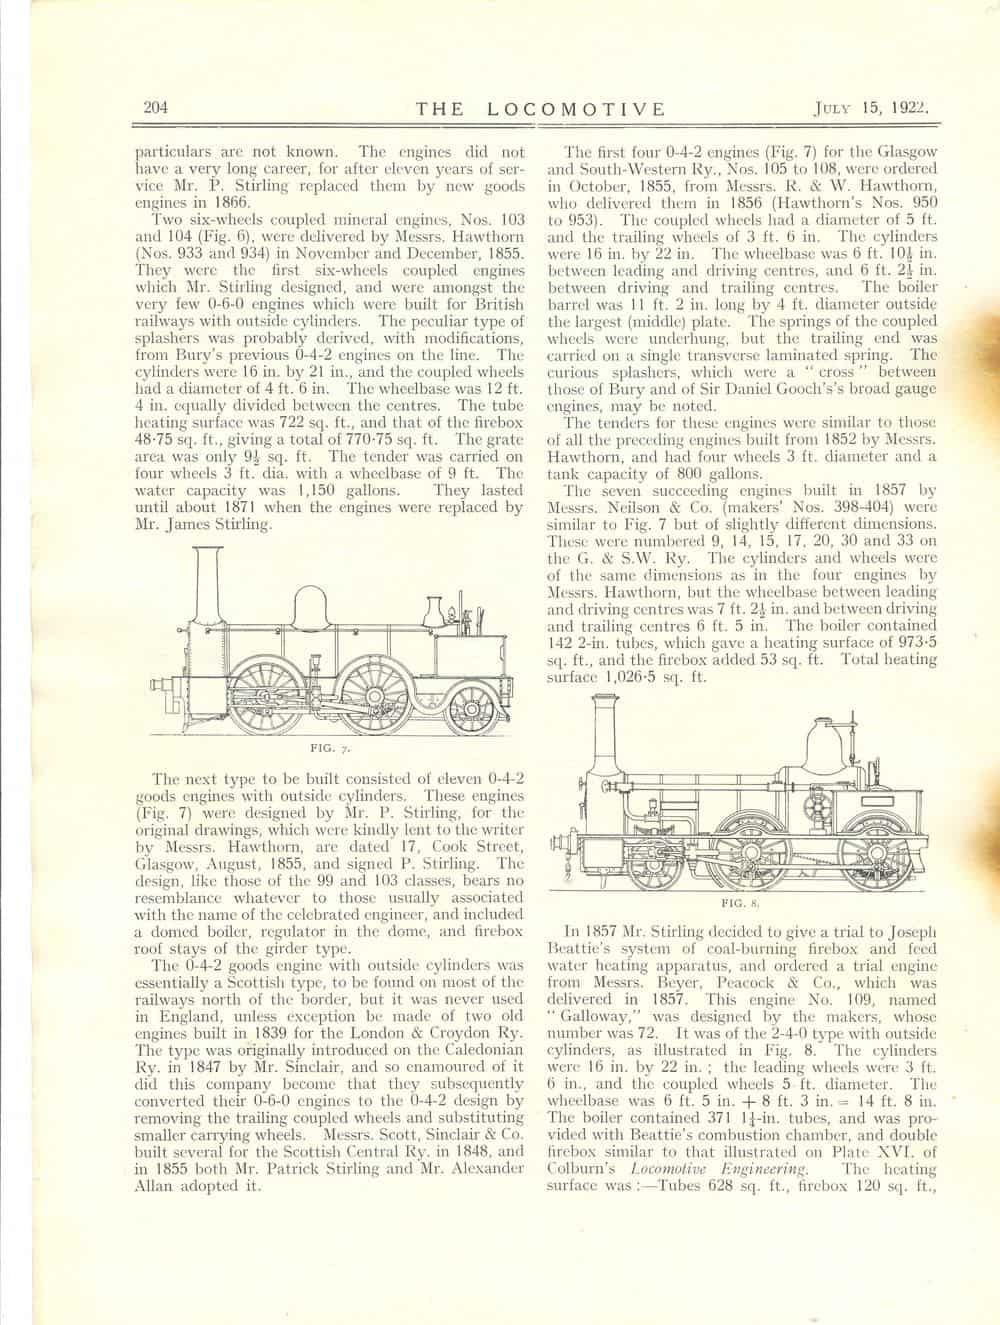 Locomotive Magazine v28 p204